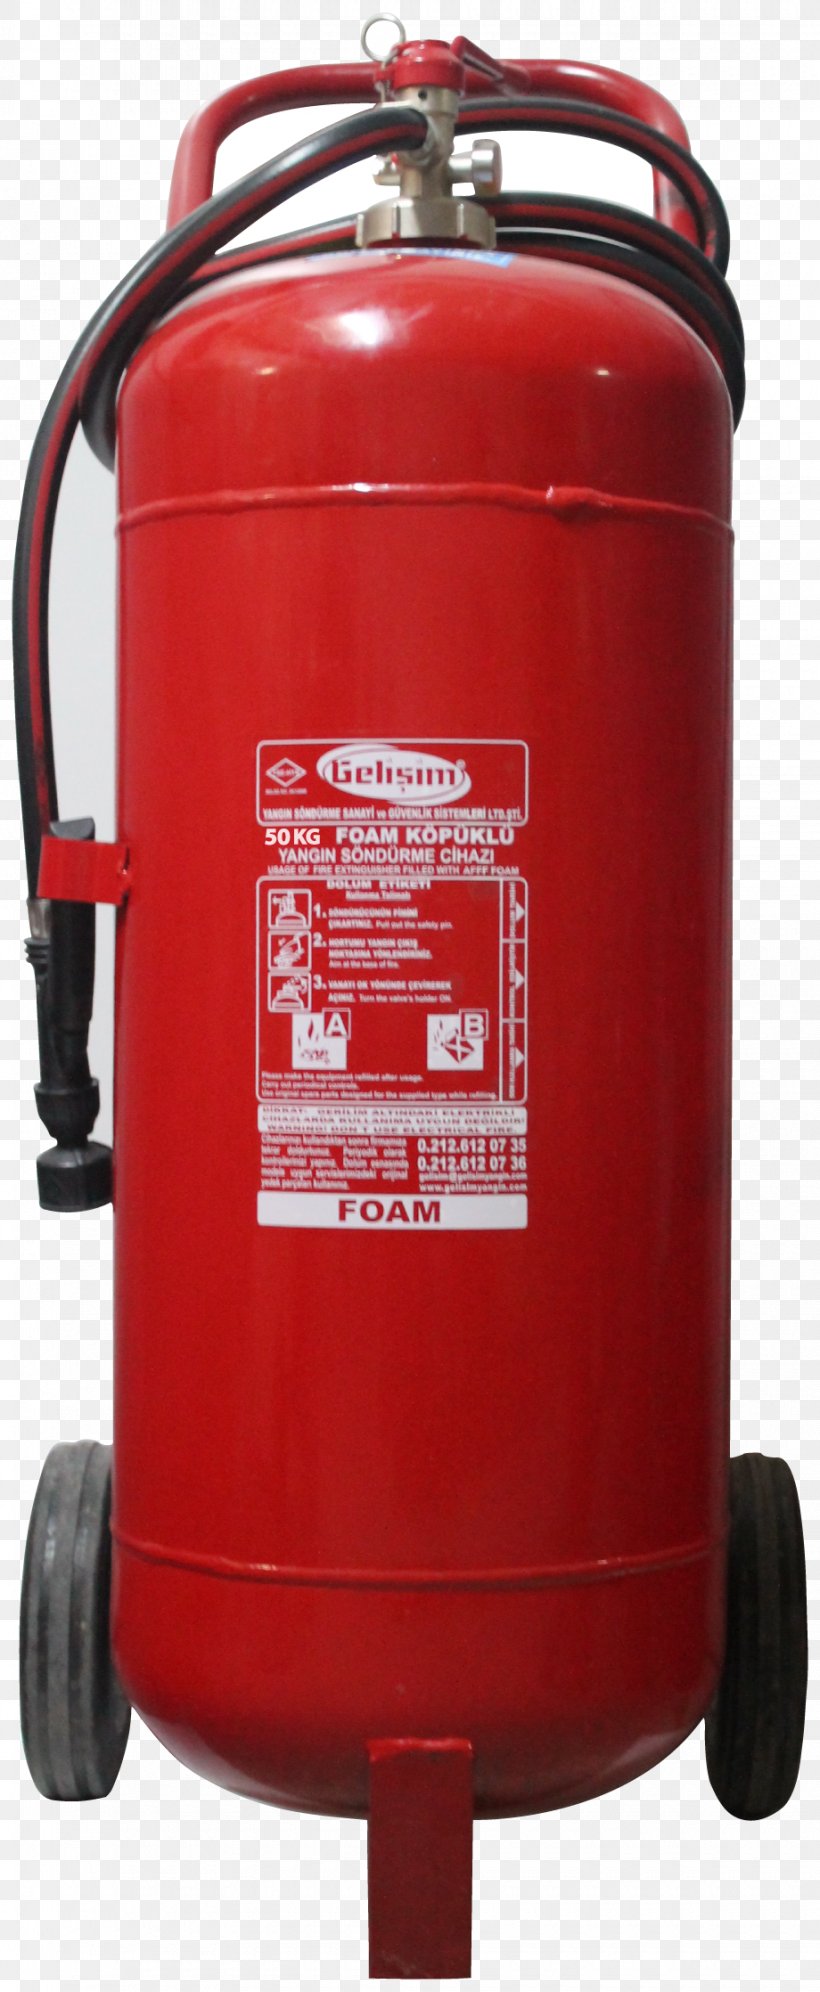 Fire Extinguishers Conflagration Kilogram Cylinder, PNG, 920x2236px, Fire Extinguishers, Bar, Carbon Dioxide, Compressor, Conflagration Download Free